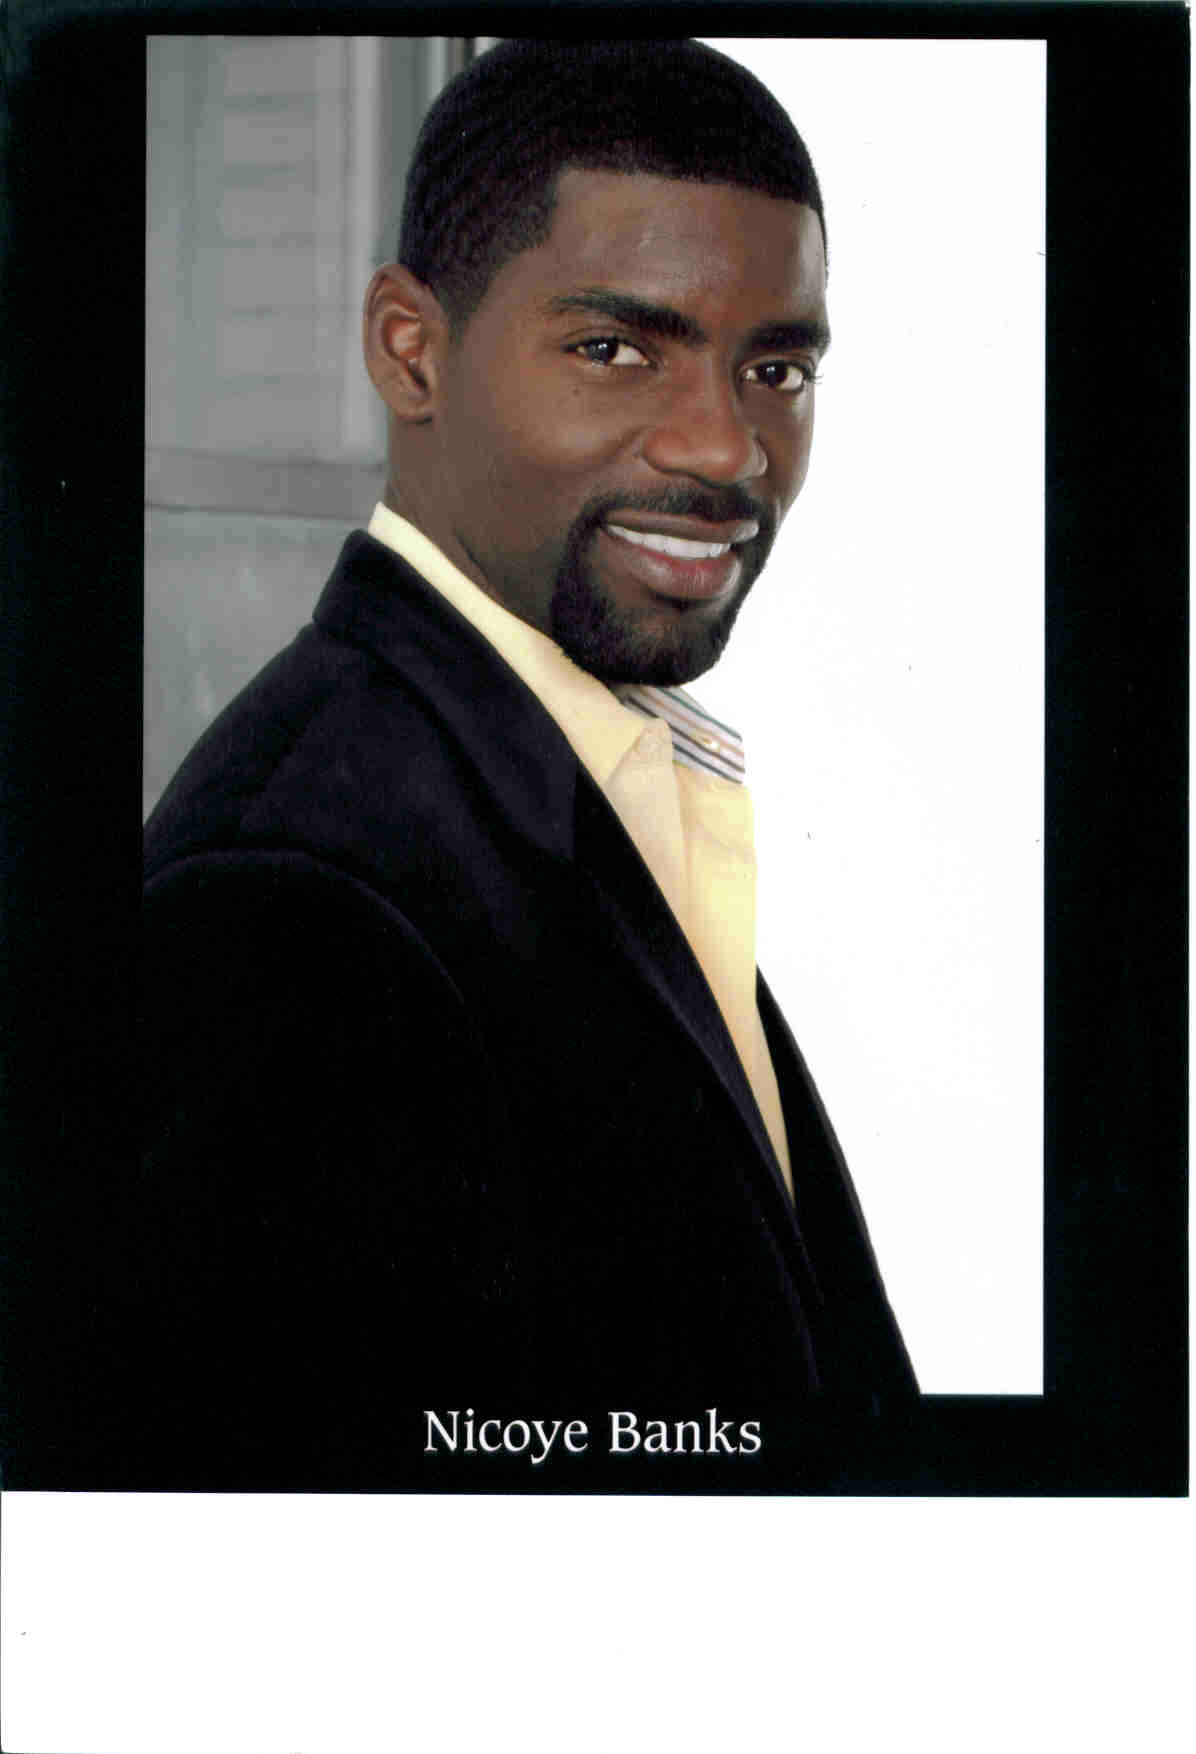 Nicoye Banks